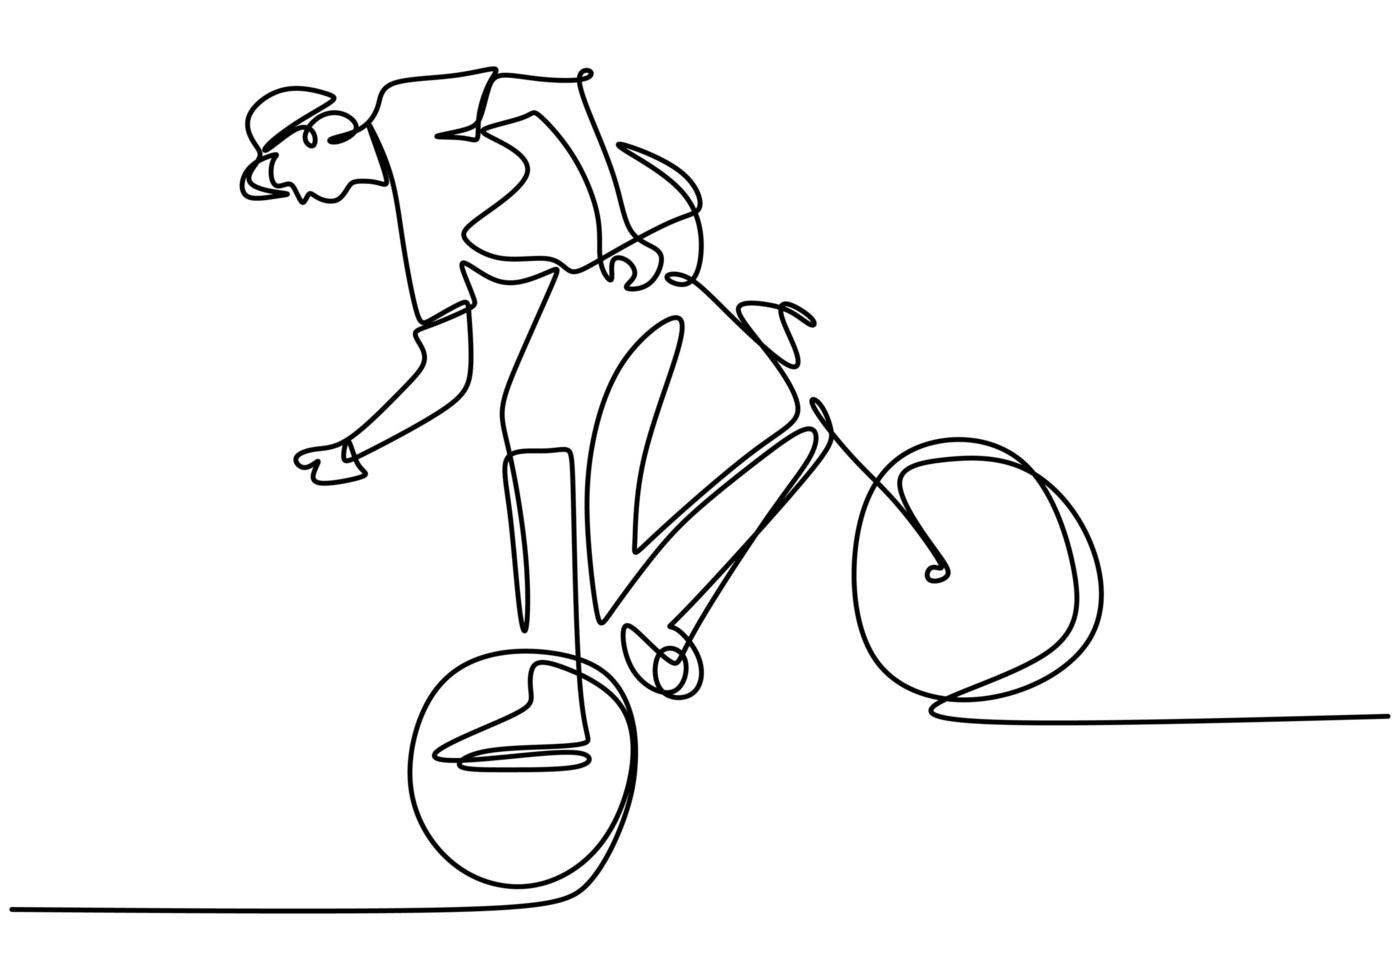 dessin au trait continu unique du jeune cycliste show freestyle stand sur un vélo. truc risqué extrême. une ligne dessiner illustration vectorielle de conception pour le style libre vecteur